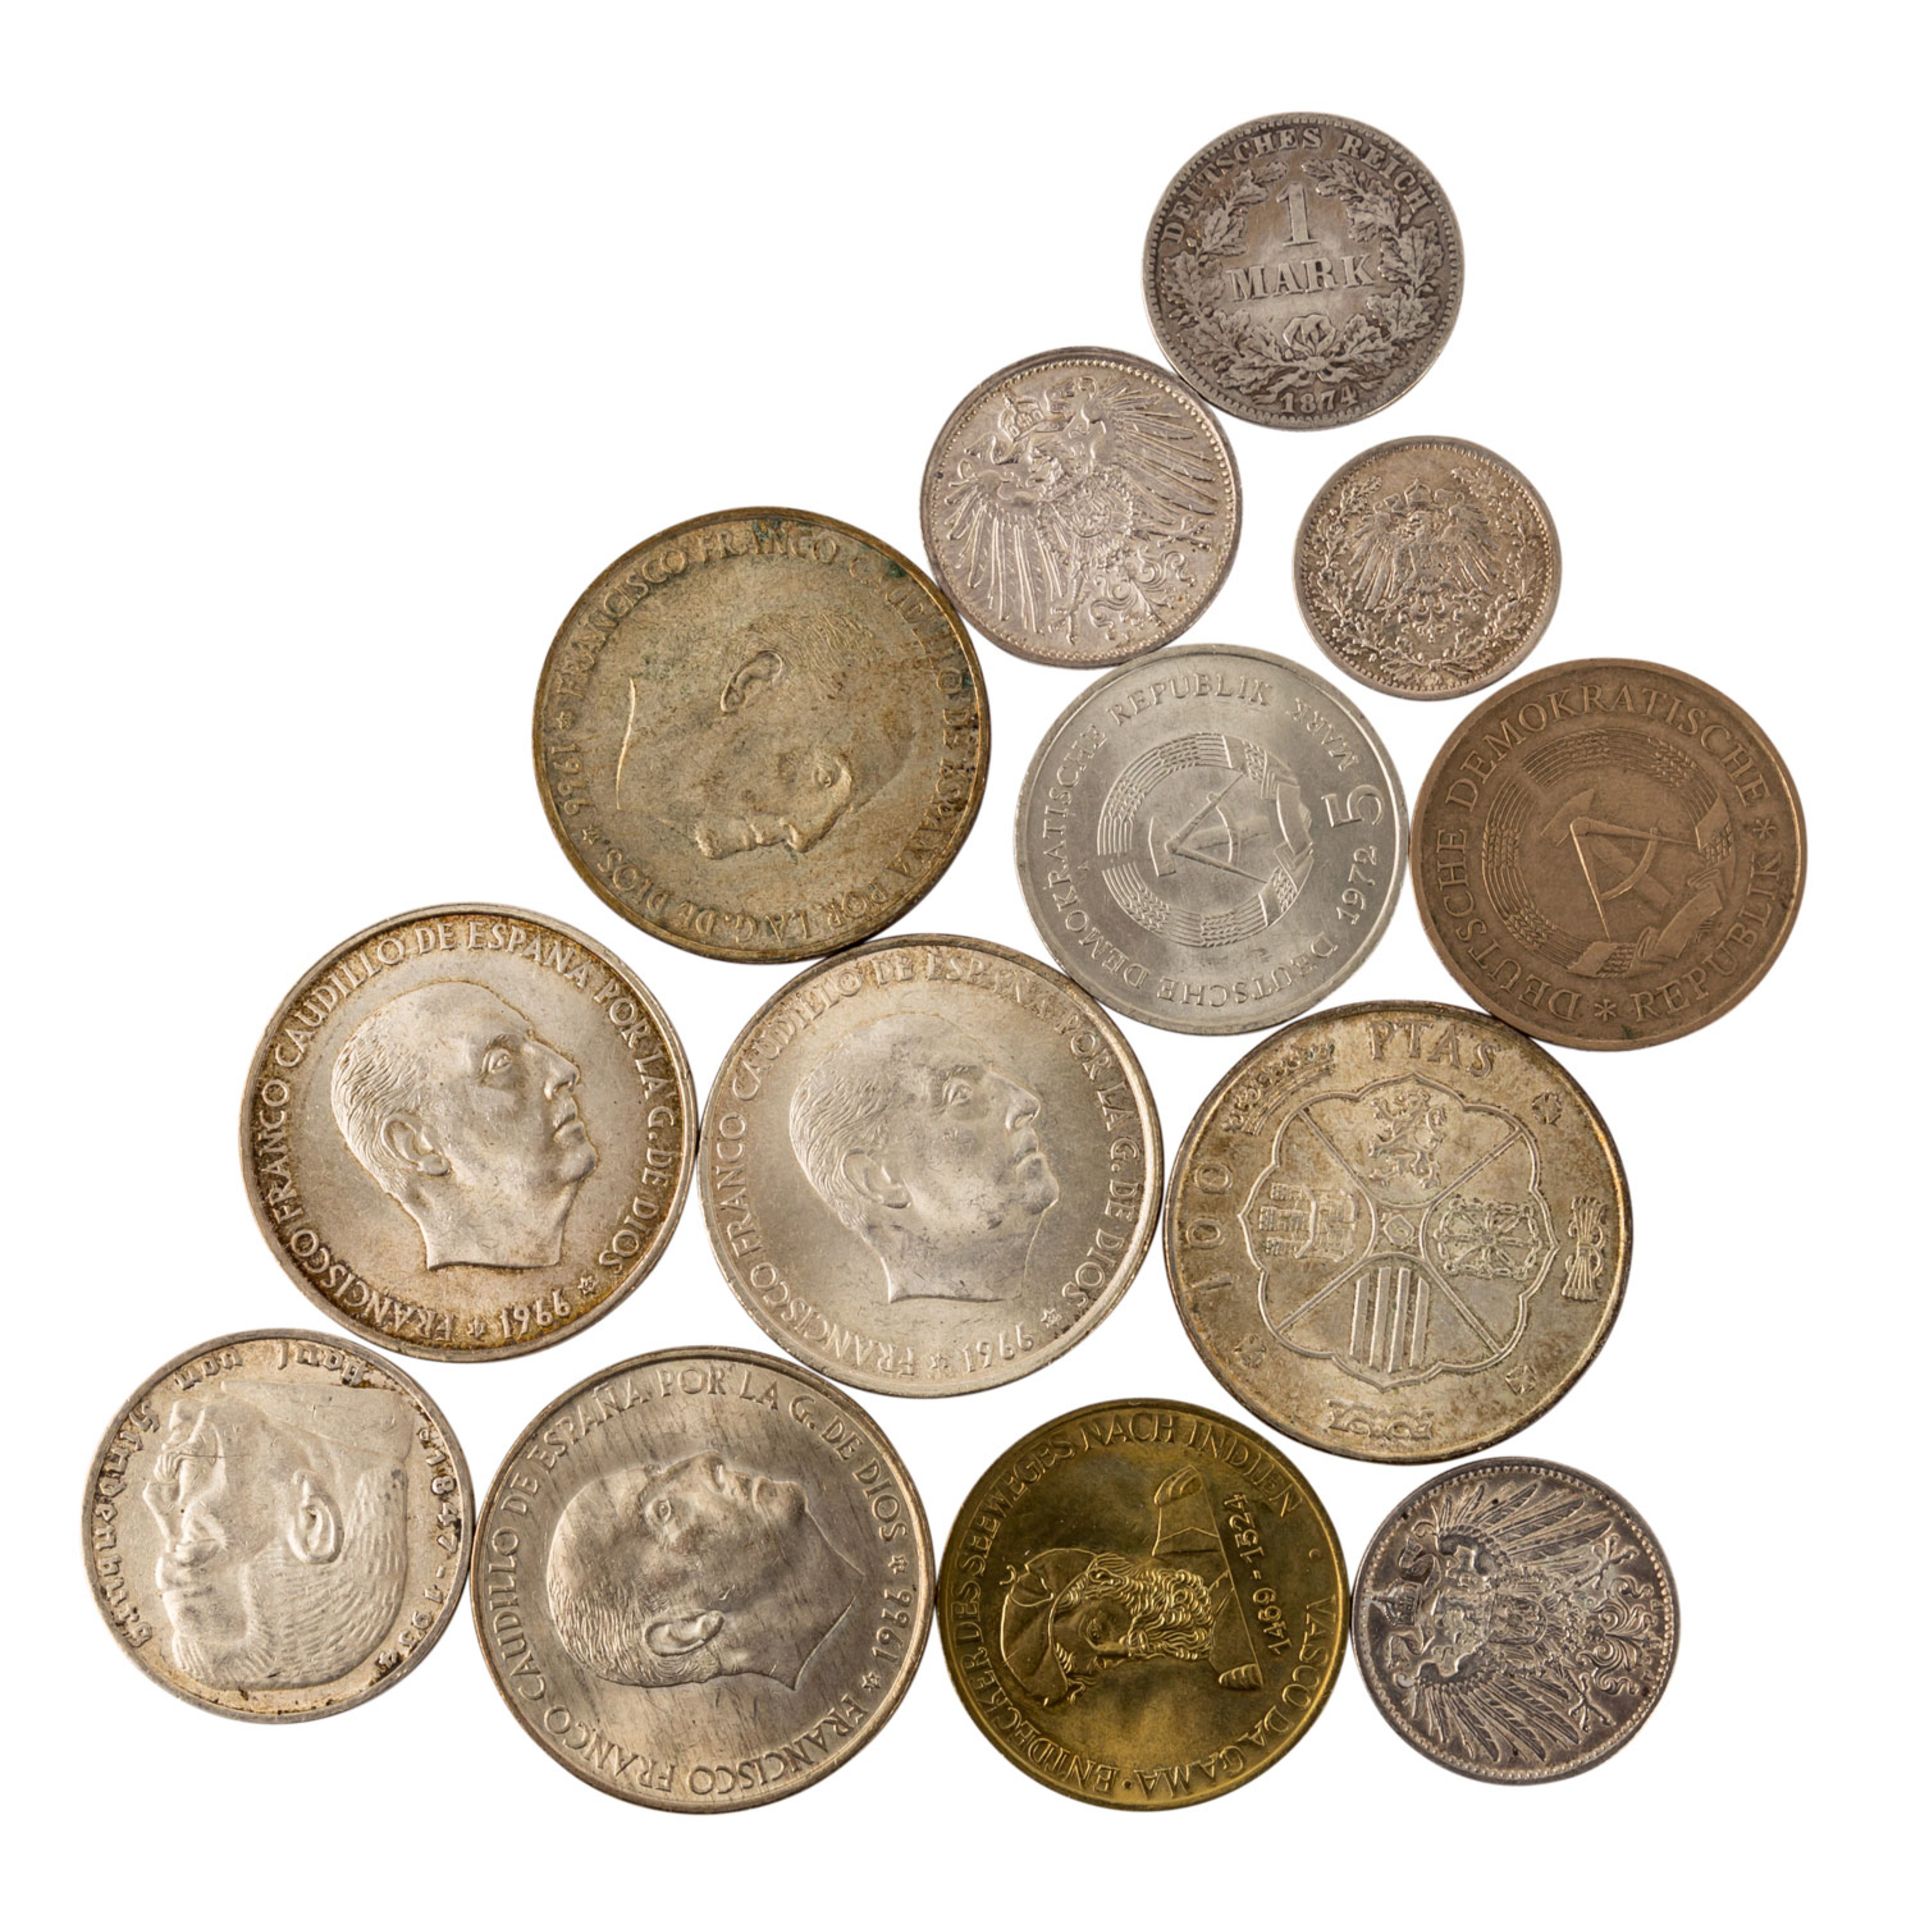 Münzen und Medaillen, BRD Gedenkmünzen,Österreich Schillinge, Medaillen 40 Jahre BRD fast nahezu 500 - Bild 6 aus 12